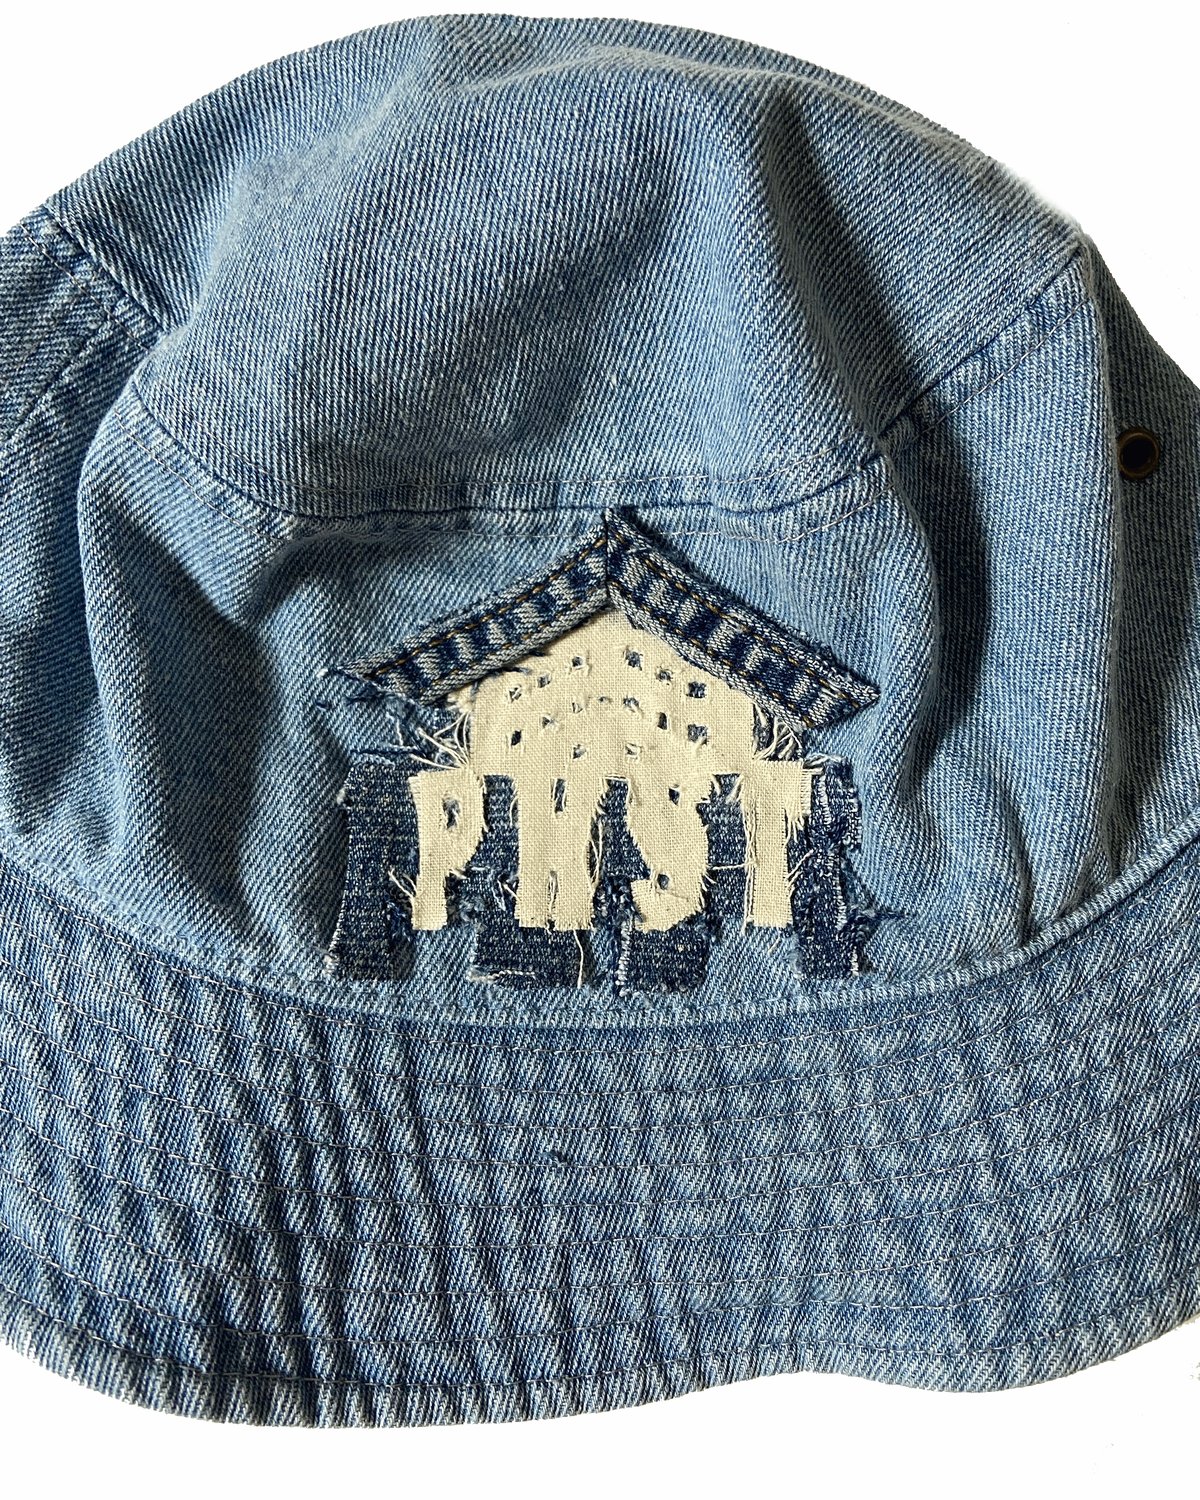 Image of PHST DENIM BUCKET HAT